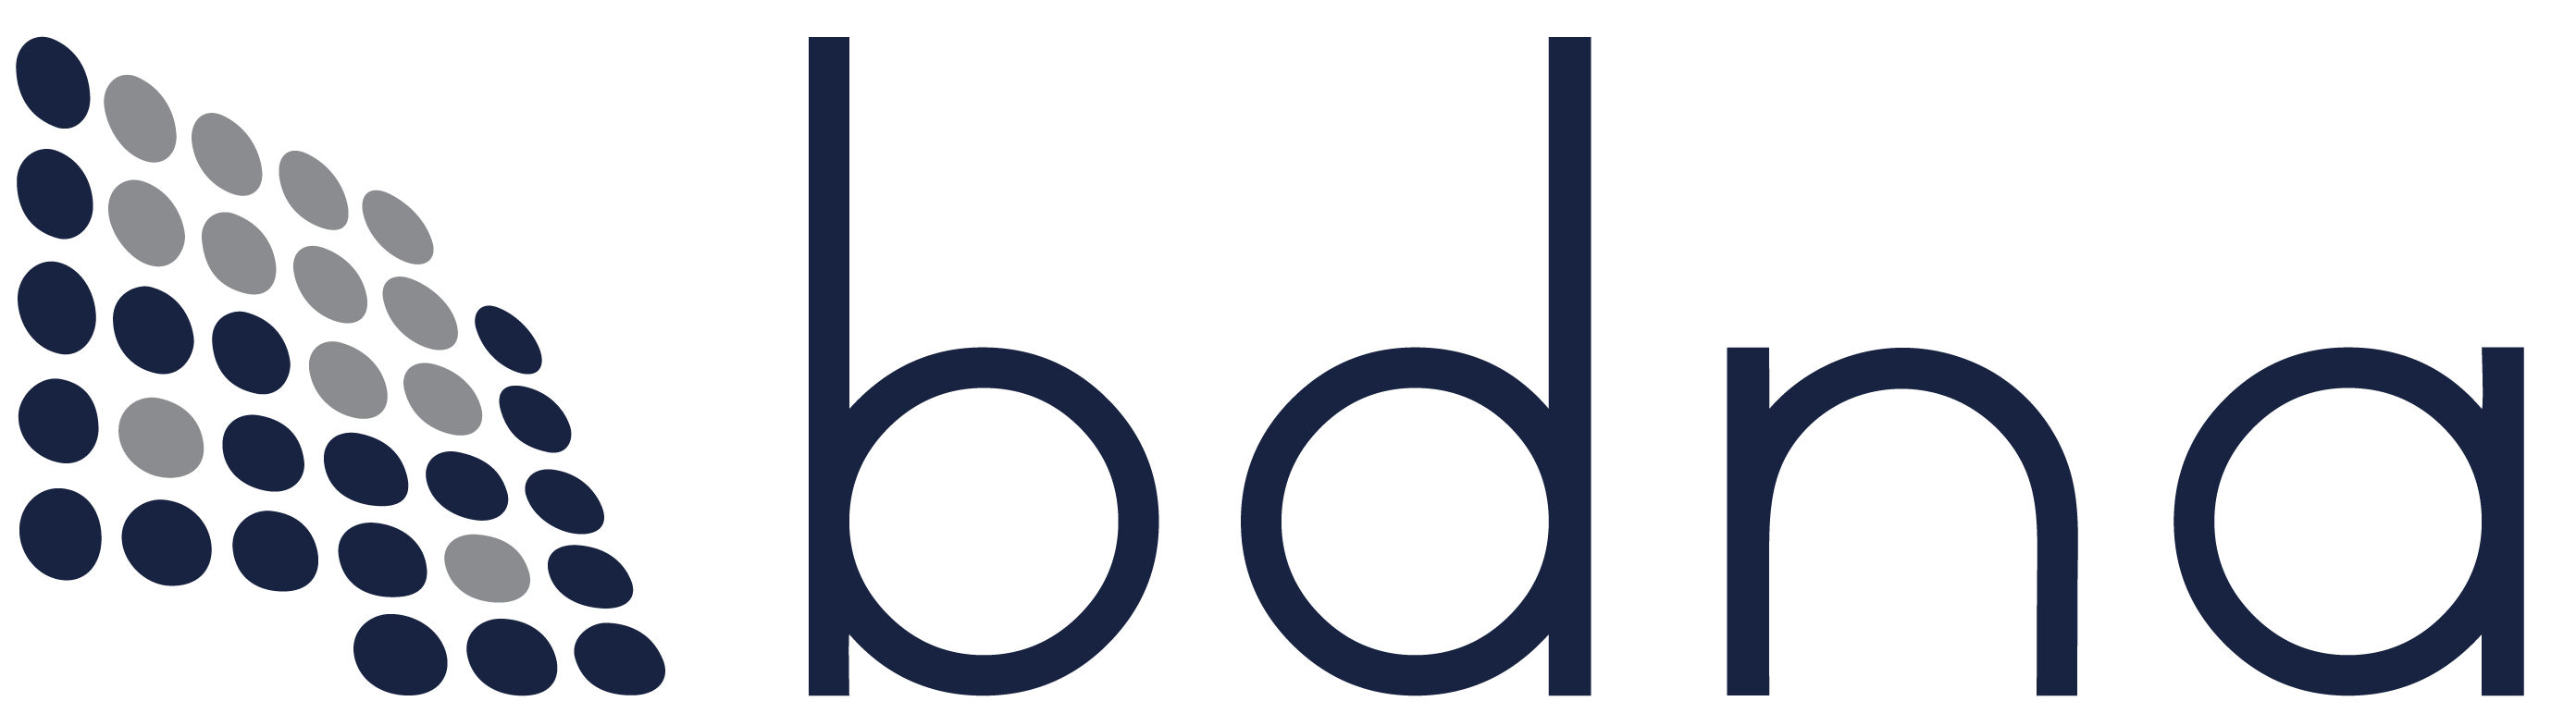 bdna company logo